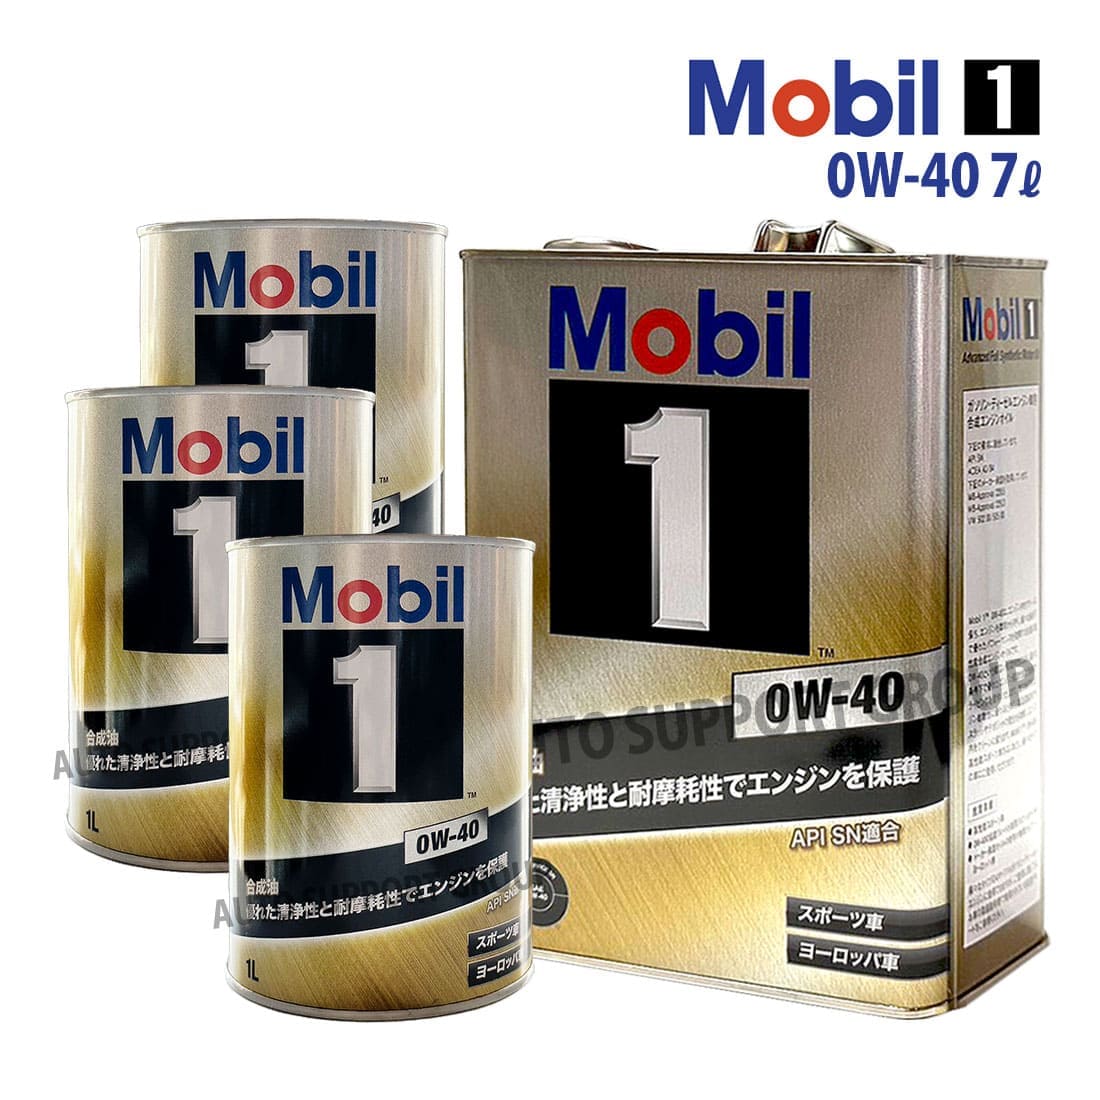 エンジンオイル 0W-40 SP モービル1 Mobil1 4L缶 (4リットル) : ys 